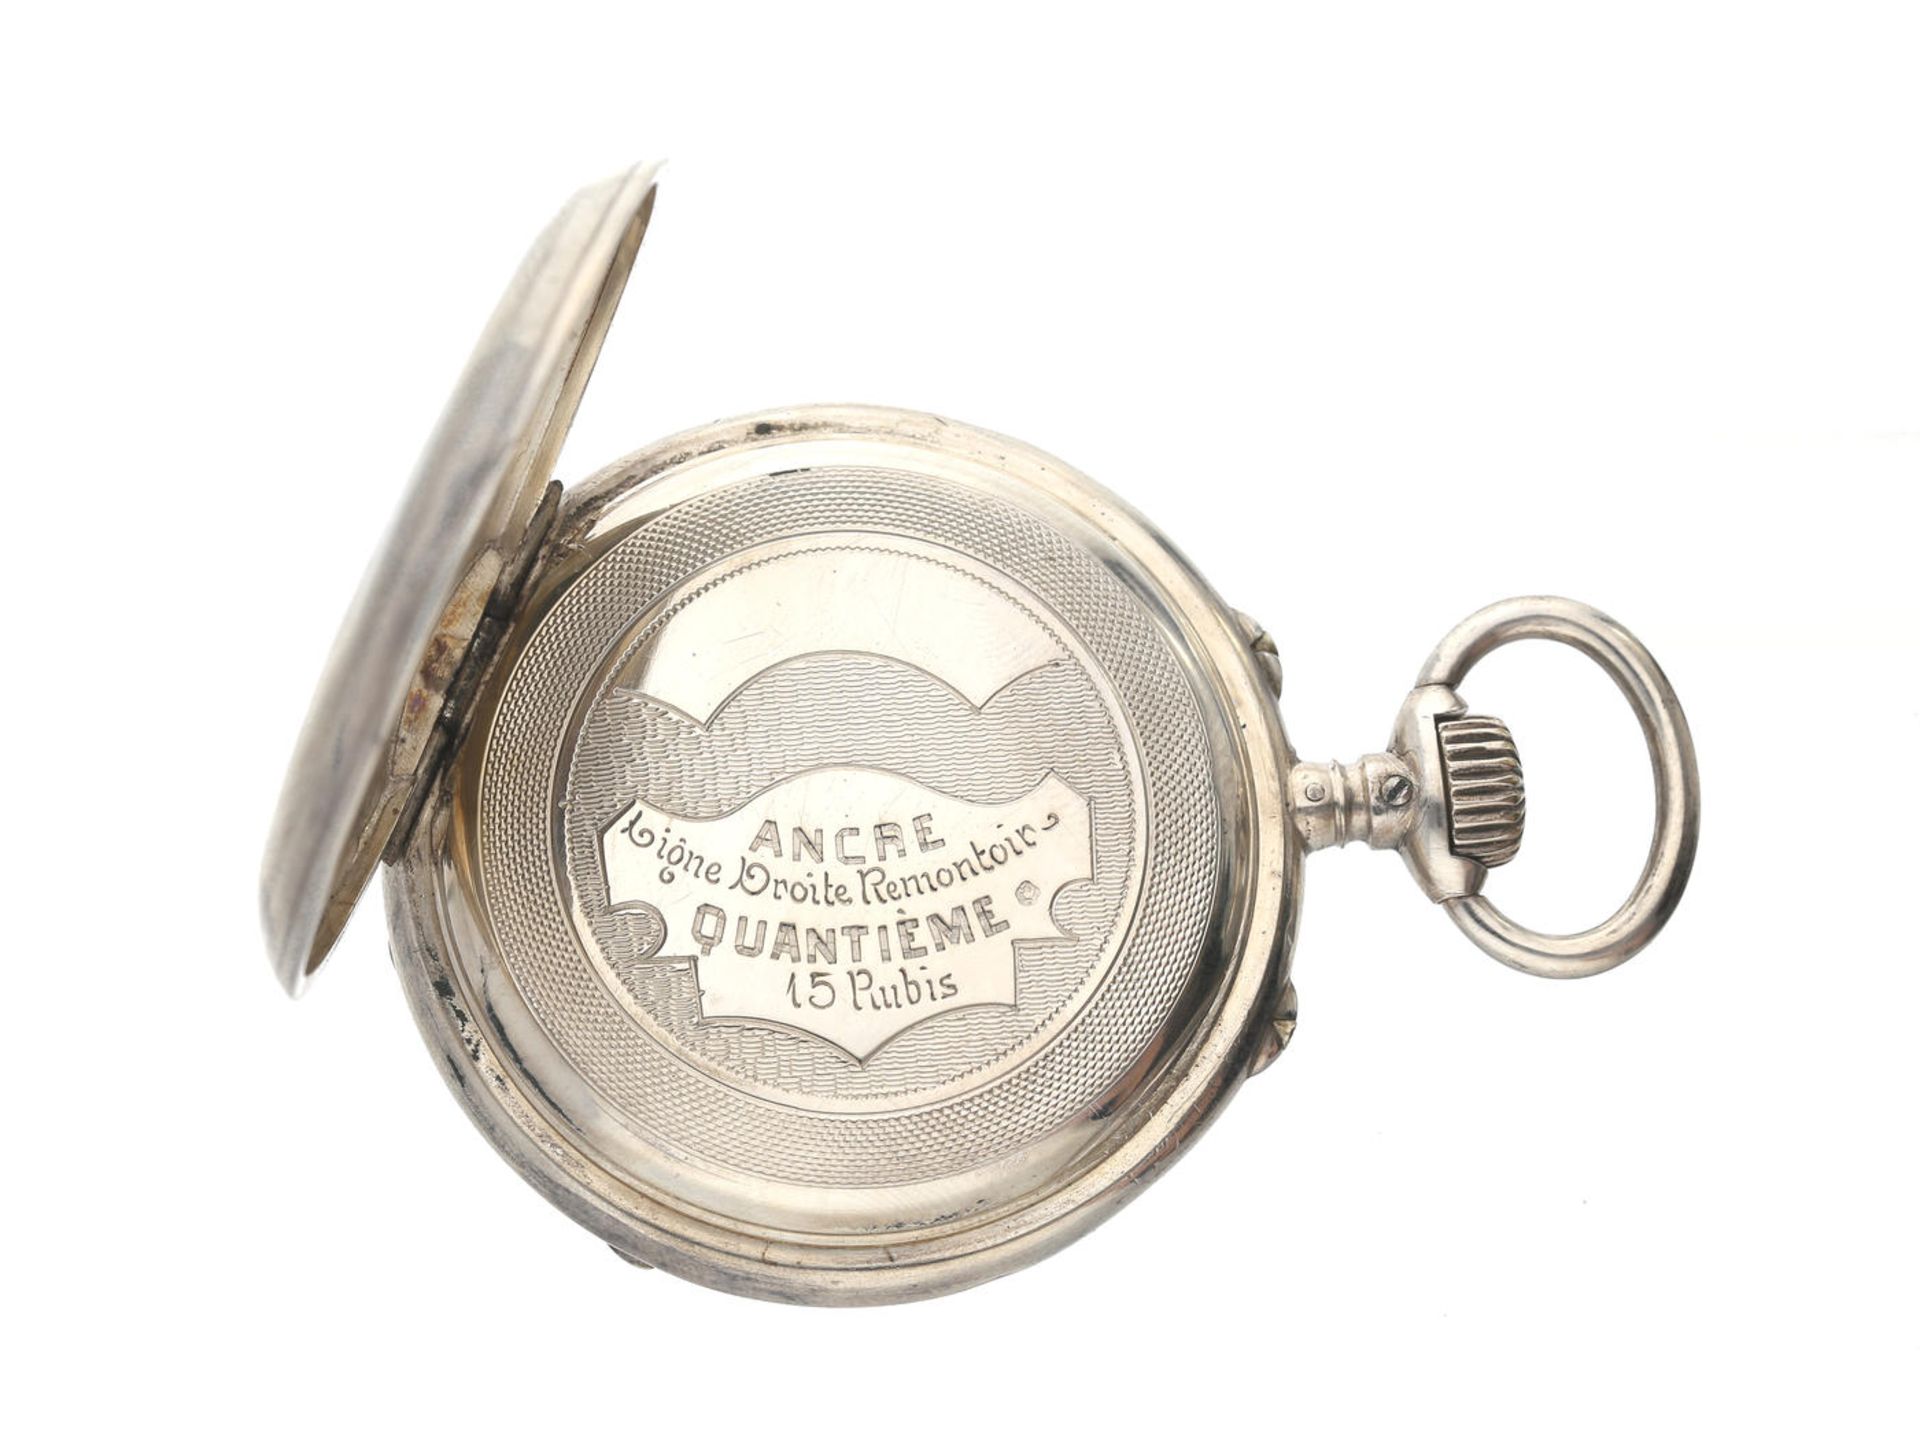 Taschenuhr: seltene Taschenuhr mit Datum und Wochentagsanzeige, Schweiz um 1890 Ca. Ø48mm, ca. - Bild 3 aus 3